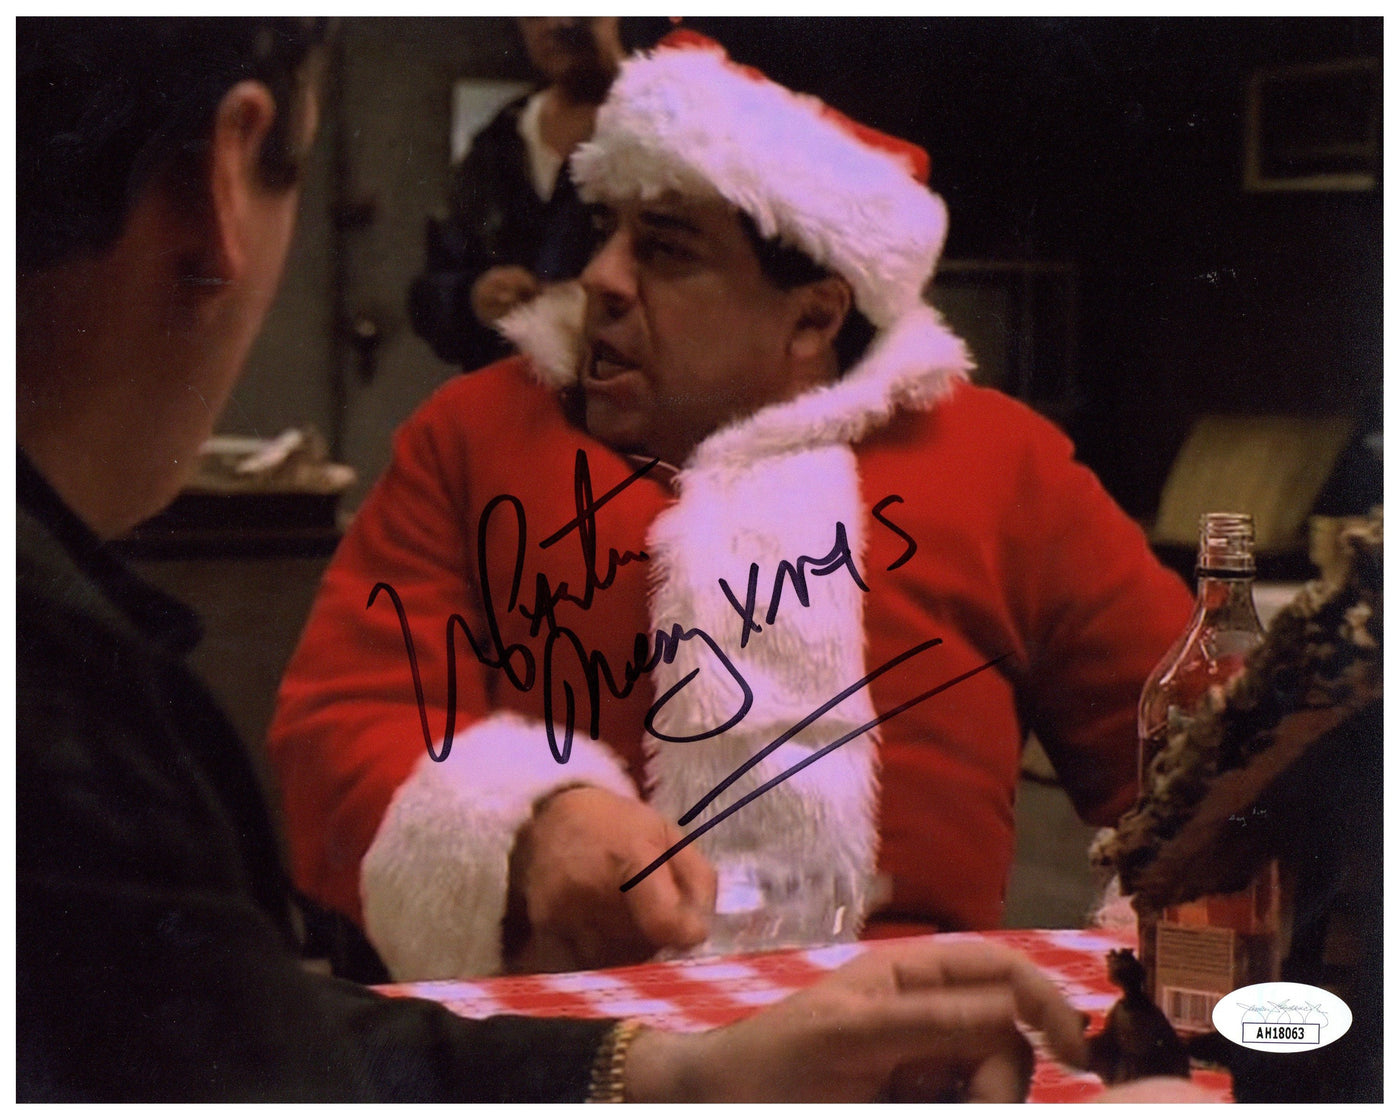 Vincent Pastore Signed 8x10 Photo The Sopranos Santa Claus Autographed JSA COA